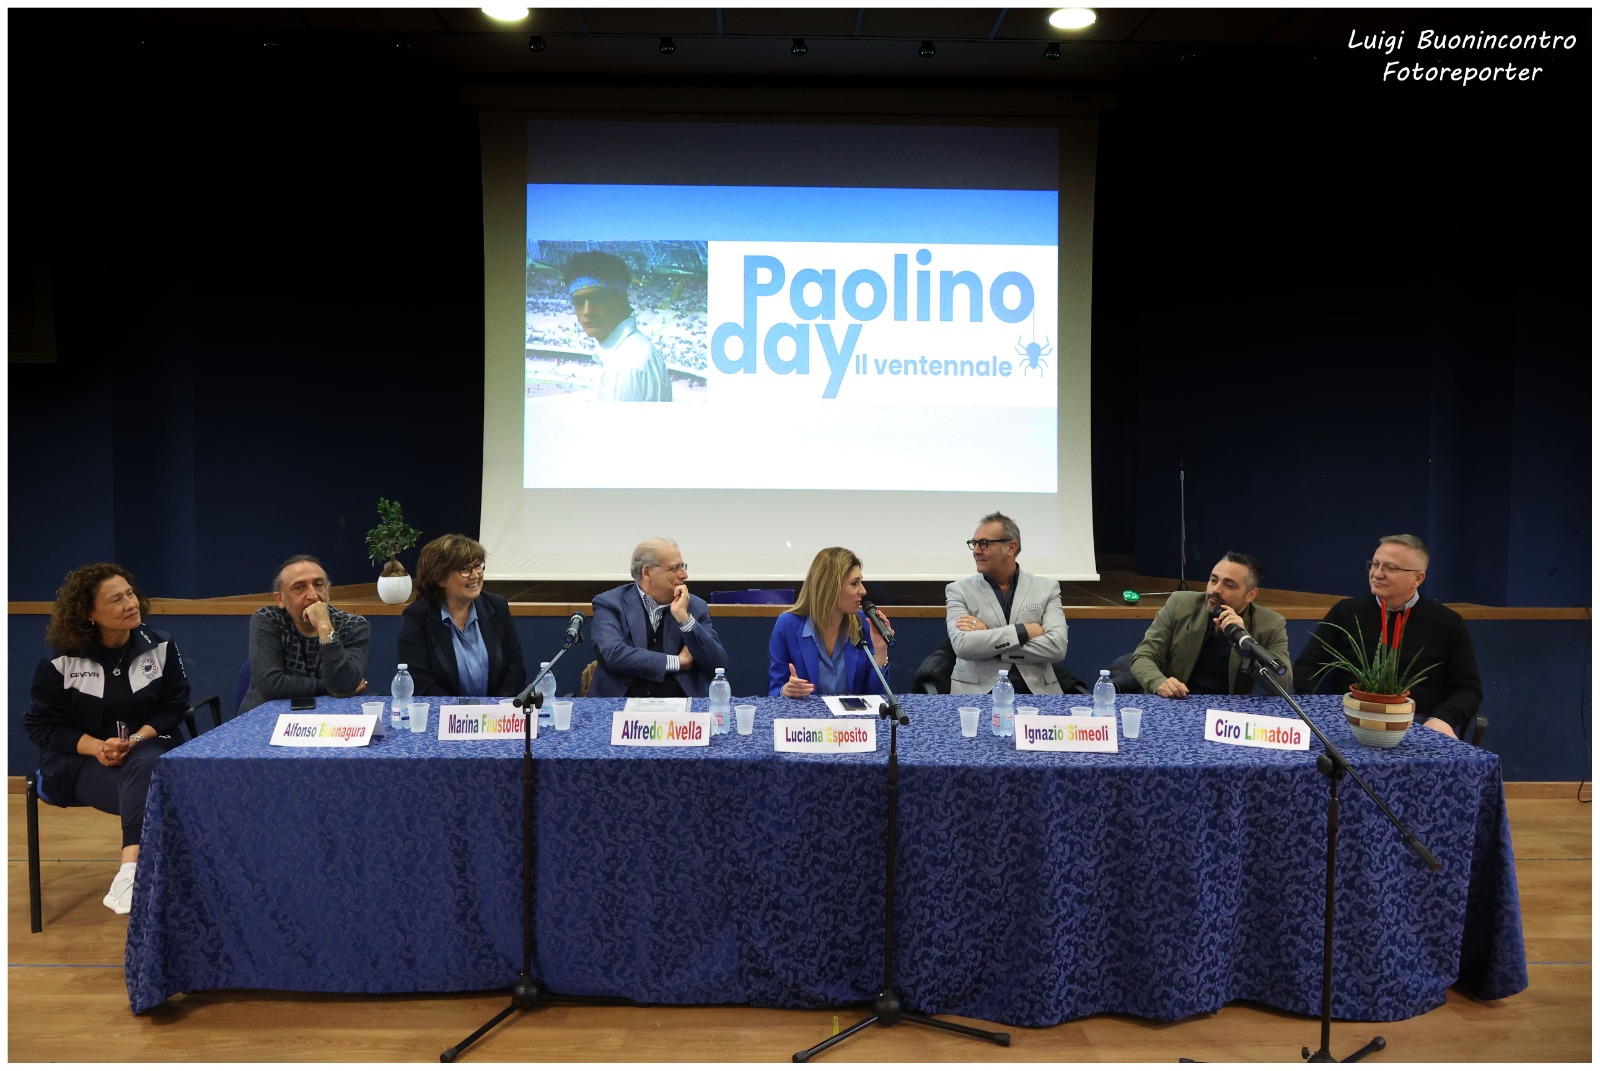 Mercoledì 5 aprile: “Paolino Day-il ventennale”, San Sebastiano al Vesuvio dedica una giornata a Paolino Avella